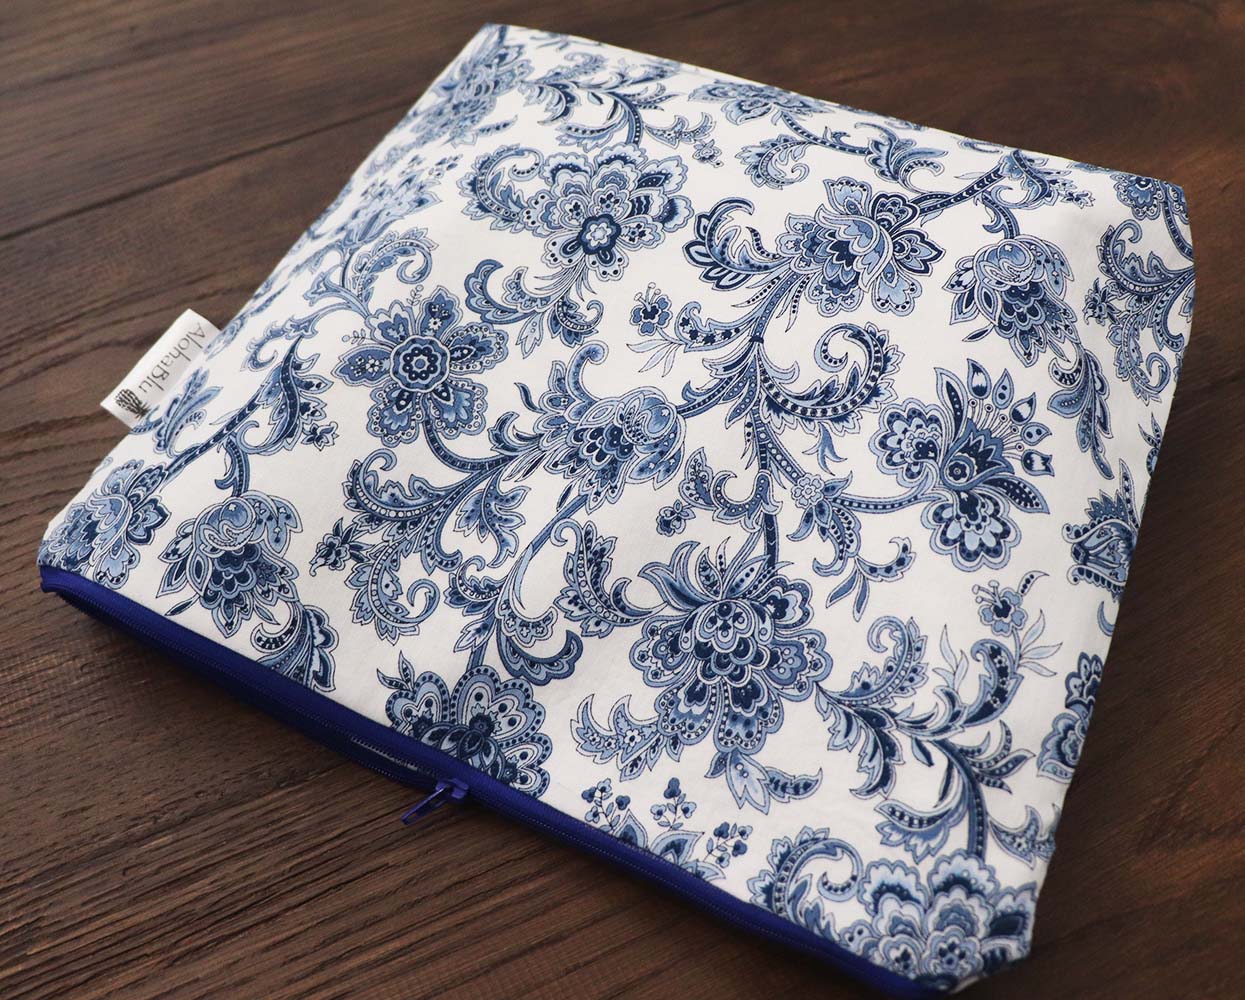 JACOBEAN (Blue) - Handmade zipper bag